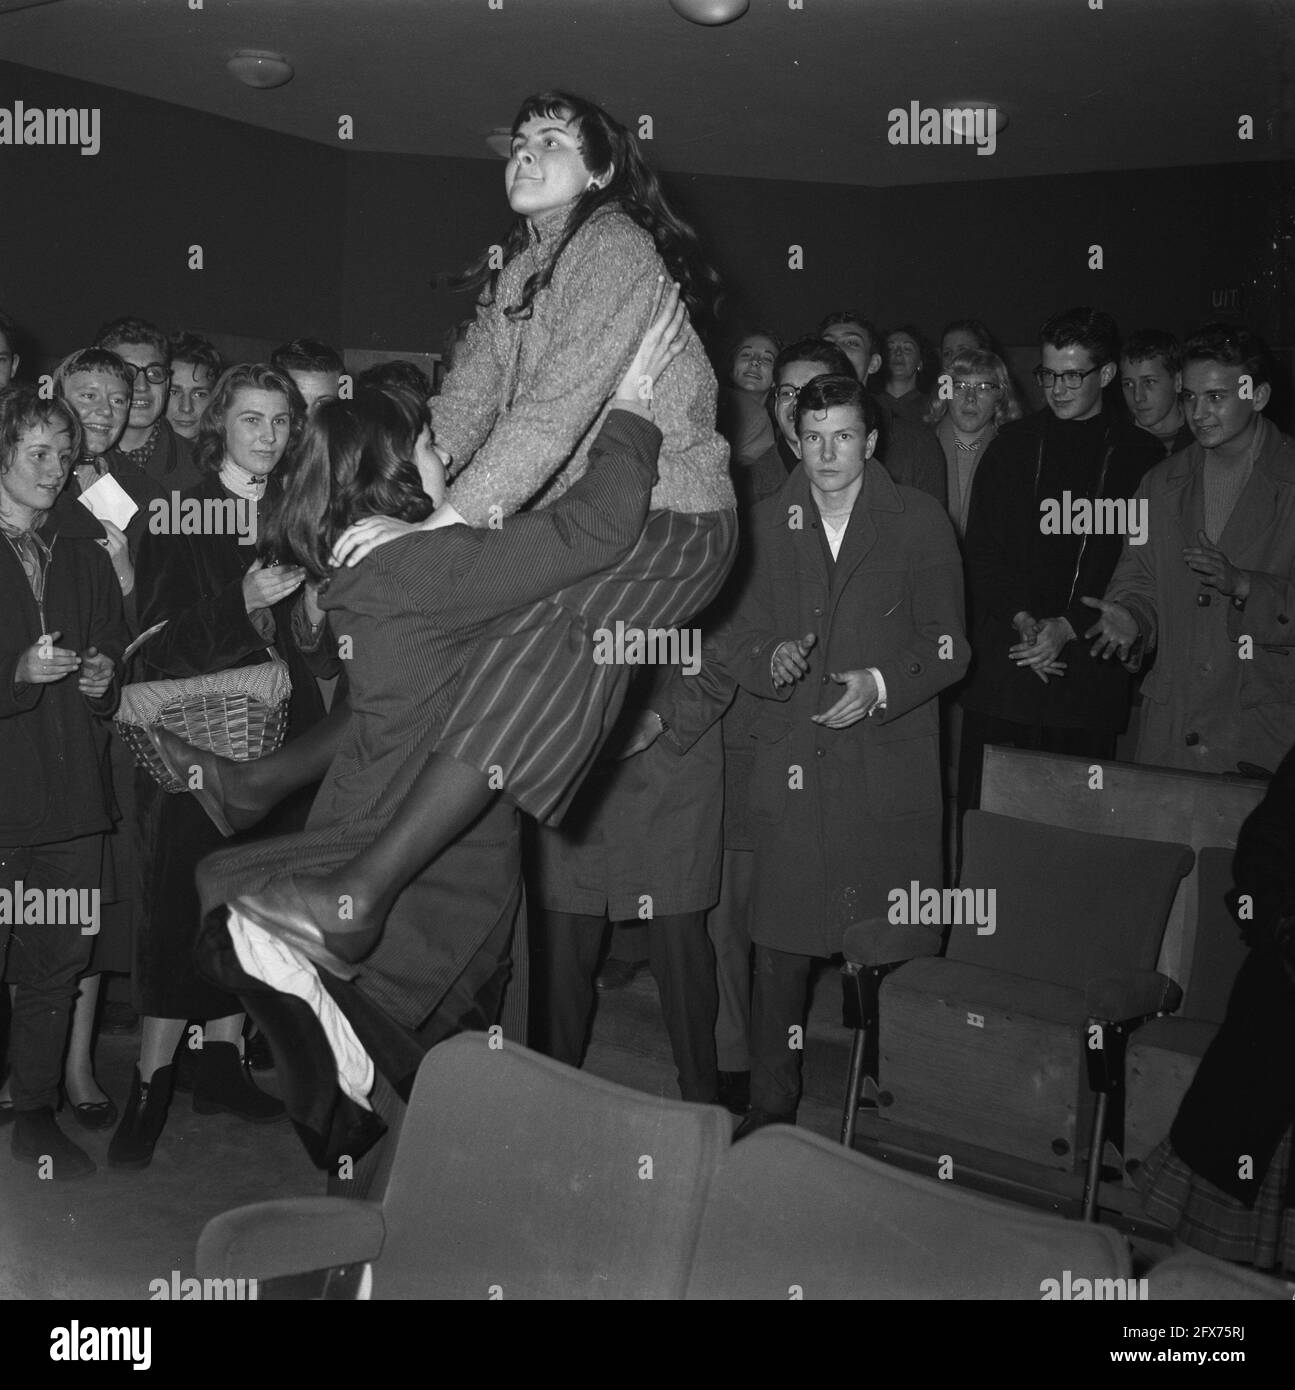 A Amsterdam, trois cinémas ont joué des disques du rock américain et lancé le roi Elvis Presley pendant la pause déjeuner de vendredi, comme une publicité pour le film Love Me Tender qui sera sorti la semaine suivante. Au premier père, un grand nombre de jeunes enthousiastes étaient présents qui, à cause de la musique en mouvement, ne restaient pas longtemps dans leurs sièges et ont commencé à danser Rock and Roll entre les rangs., 7 décembre 1956, cinémas, danse, Jeunesse, musique, pays-Bas, Agence de presse du XXe siècle photo, nouvelles à retenir, documentaire, photographie historique 1945-1990, histoires visuelles Banque D'Images